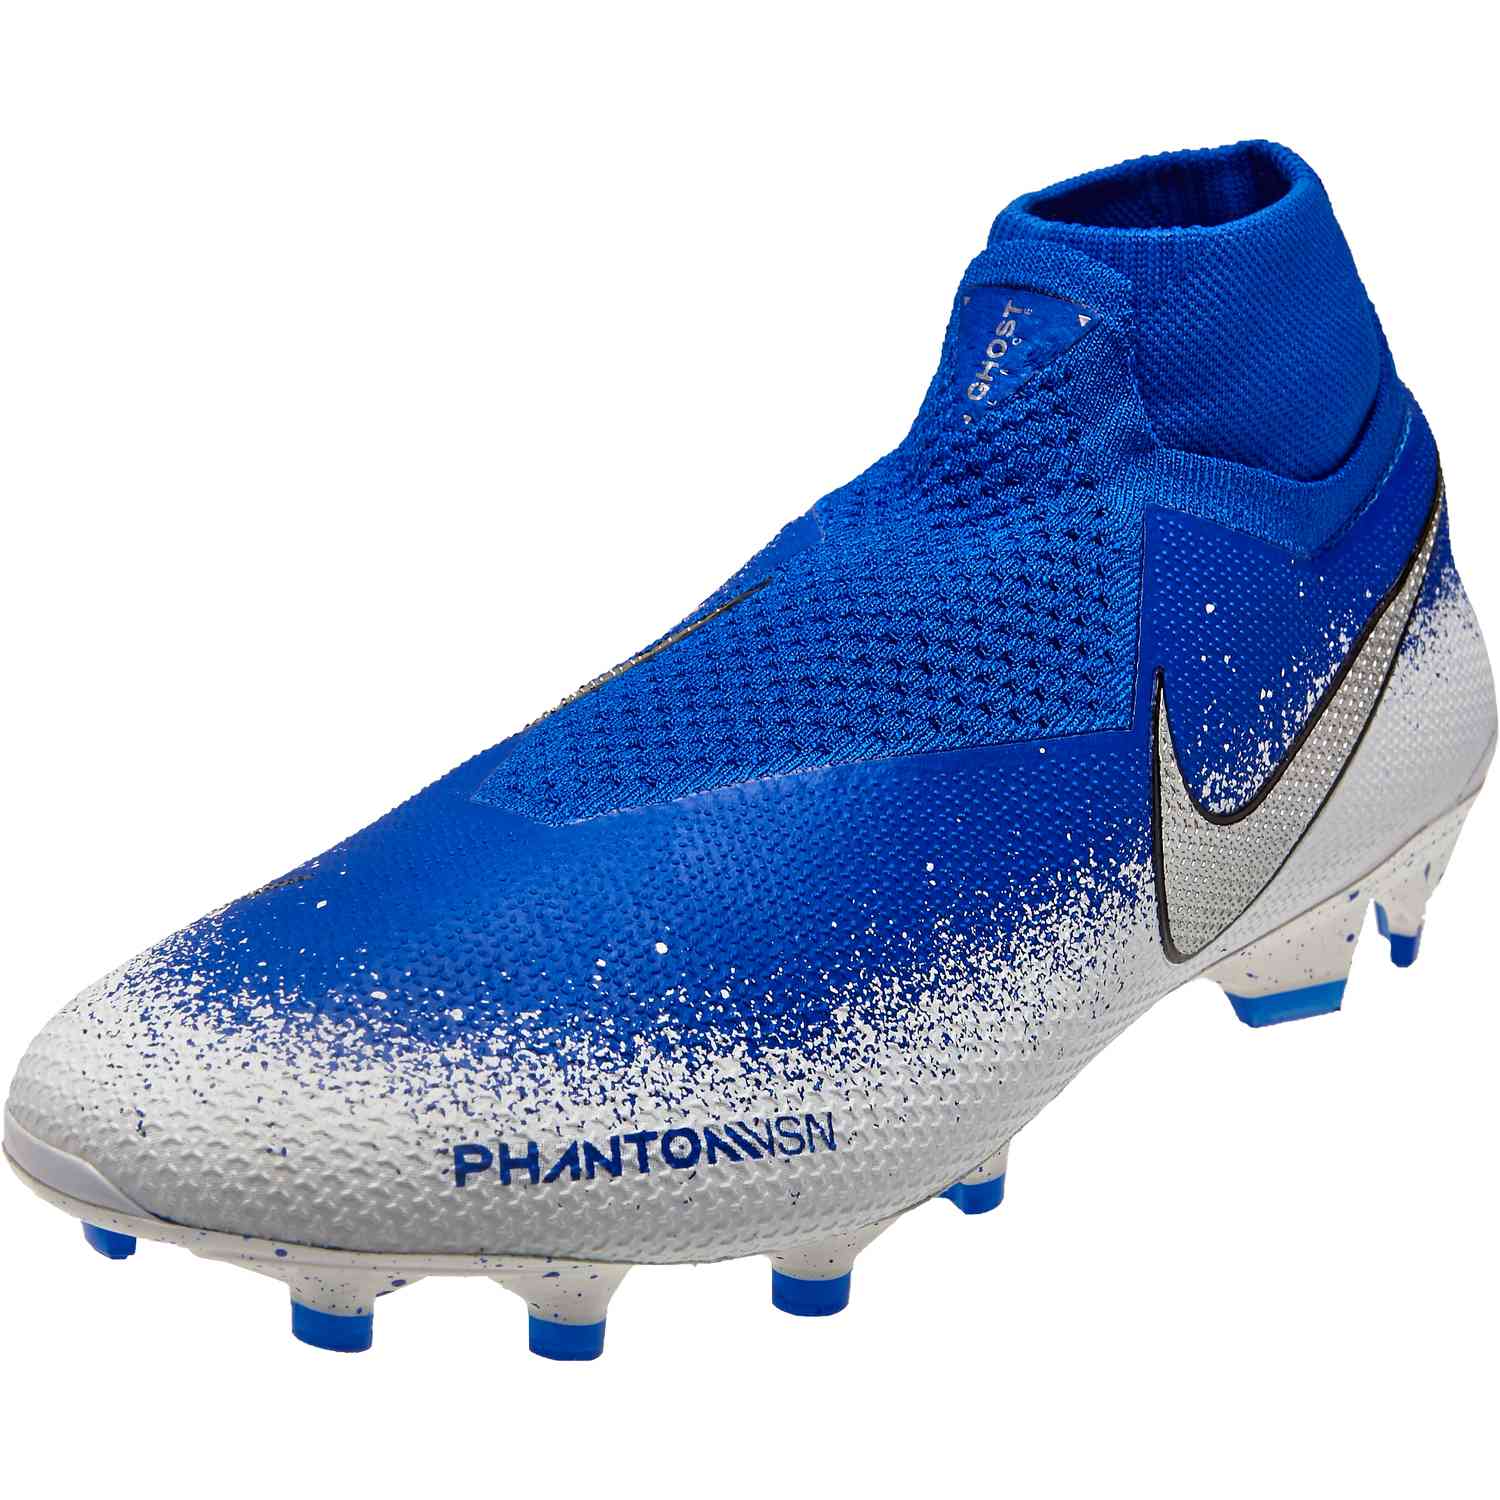 Nike Phantom Vision Elite DF Junior FG Football Boots £ 120.00